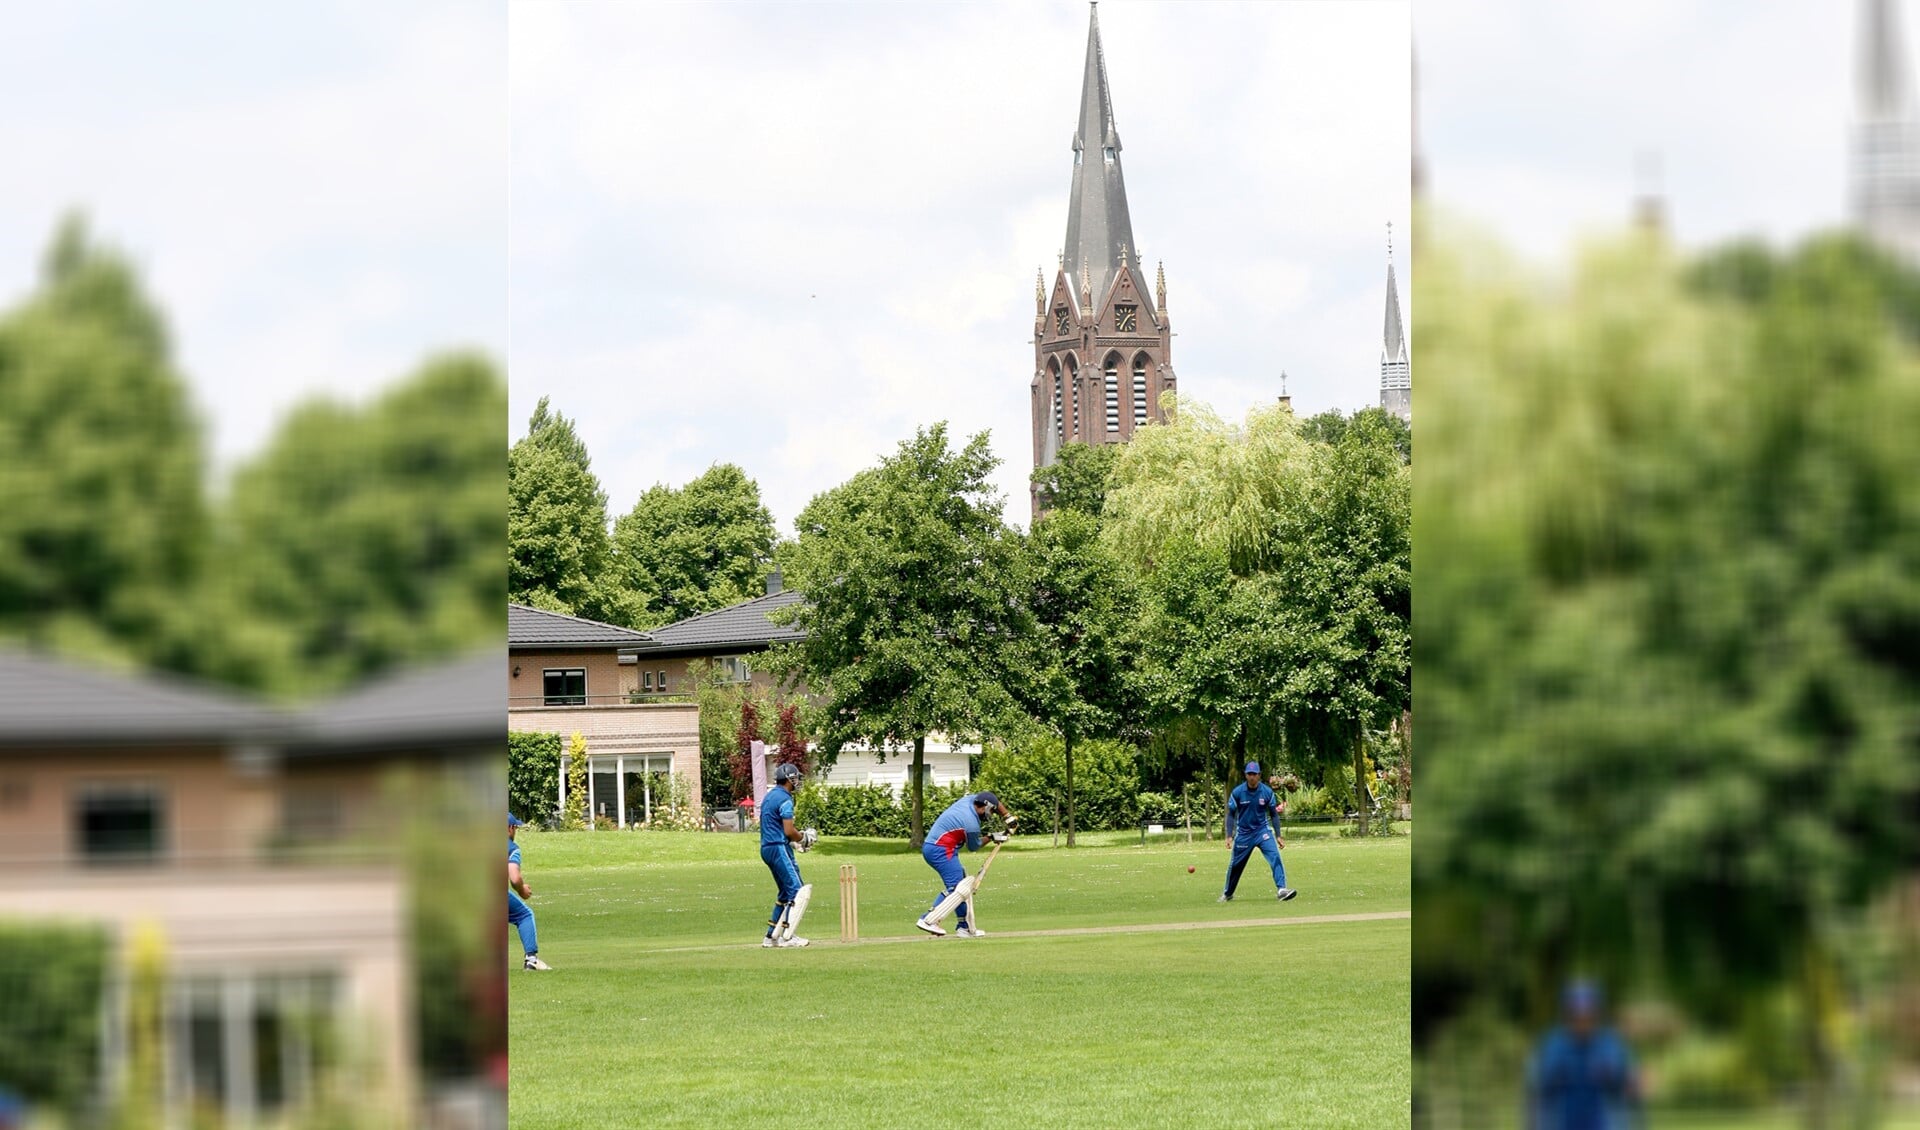 Spelmoment uit een van de wedstrijden van Voorburg Cricket Club met de St. Martinuskerk op de achtergrond (foto: PR).